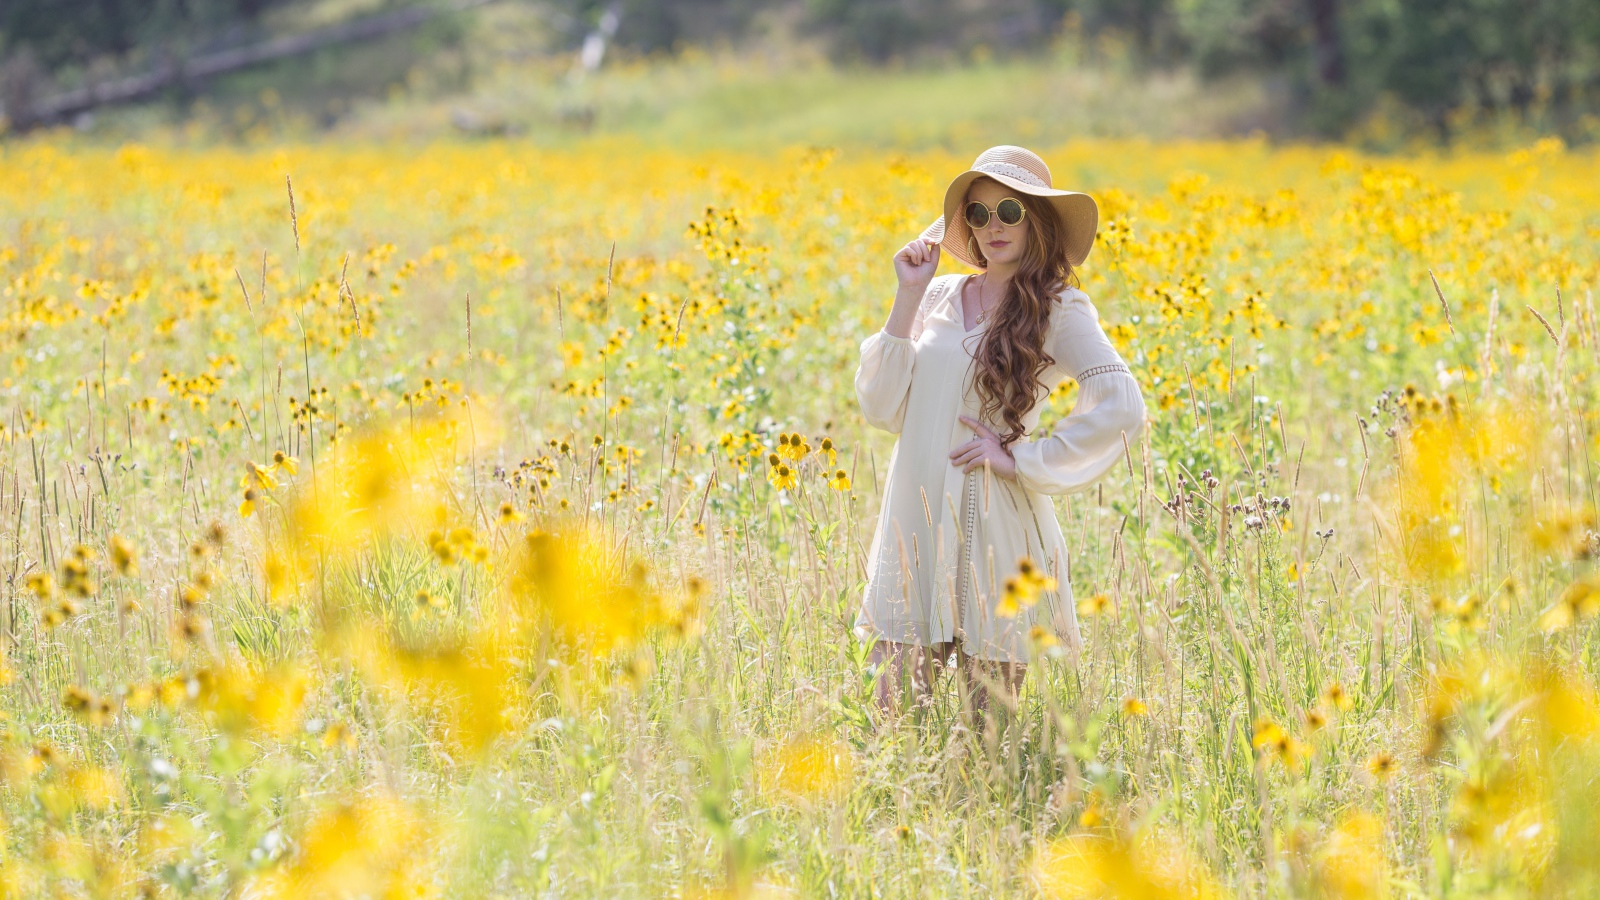 Красивая девушка в шляпе на поле с желтыми цветами